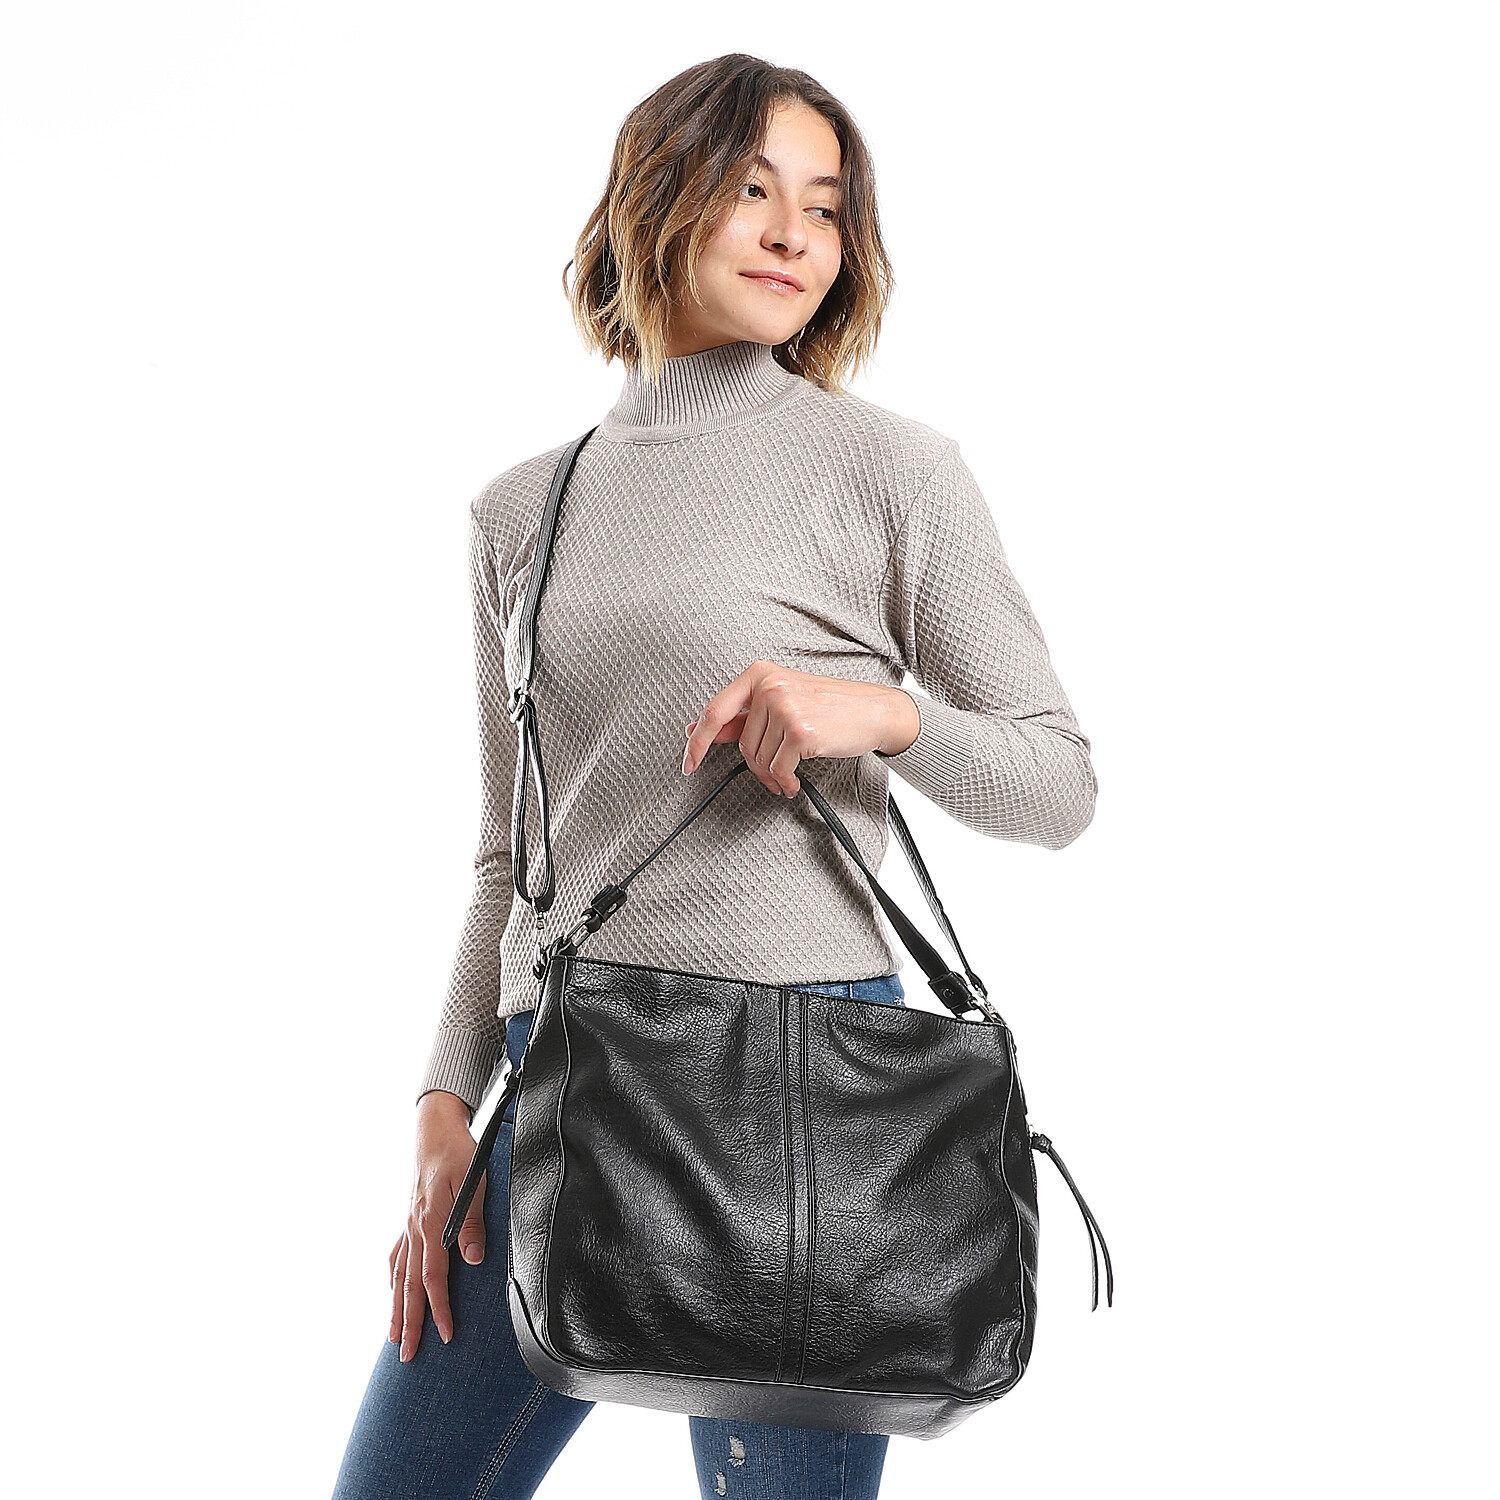 Simple Textured Leather Shoulder Bag - Black 4978